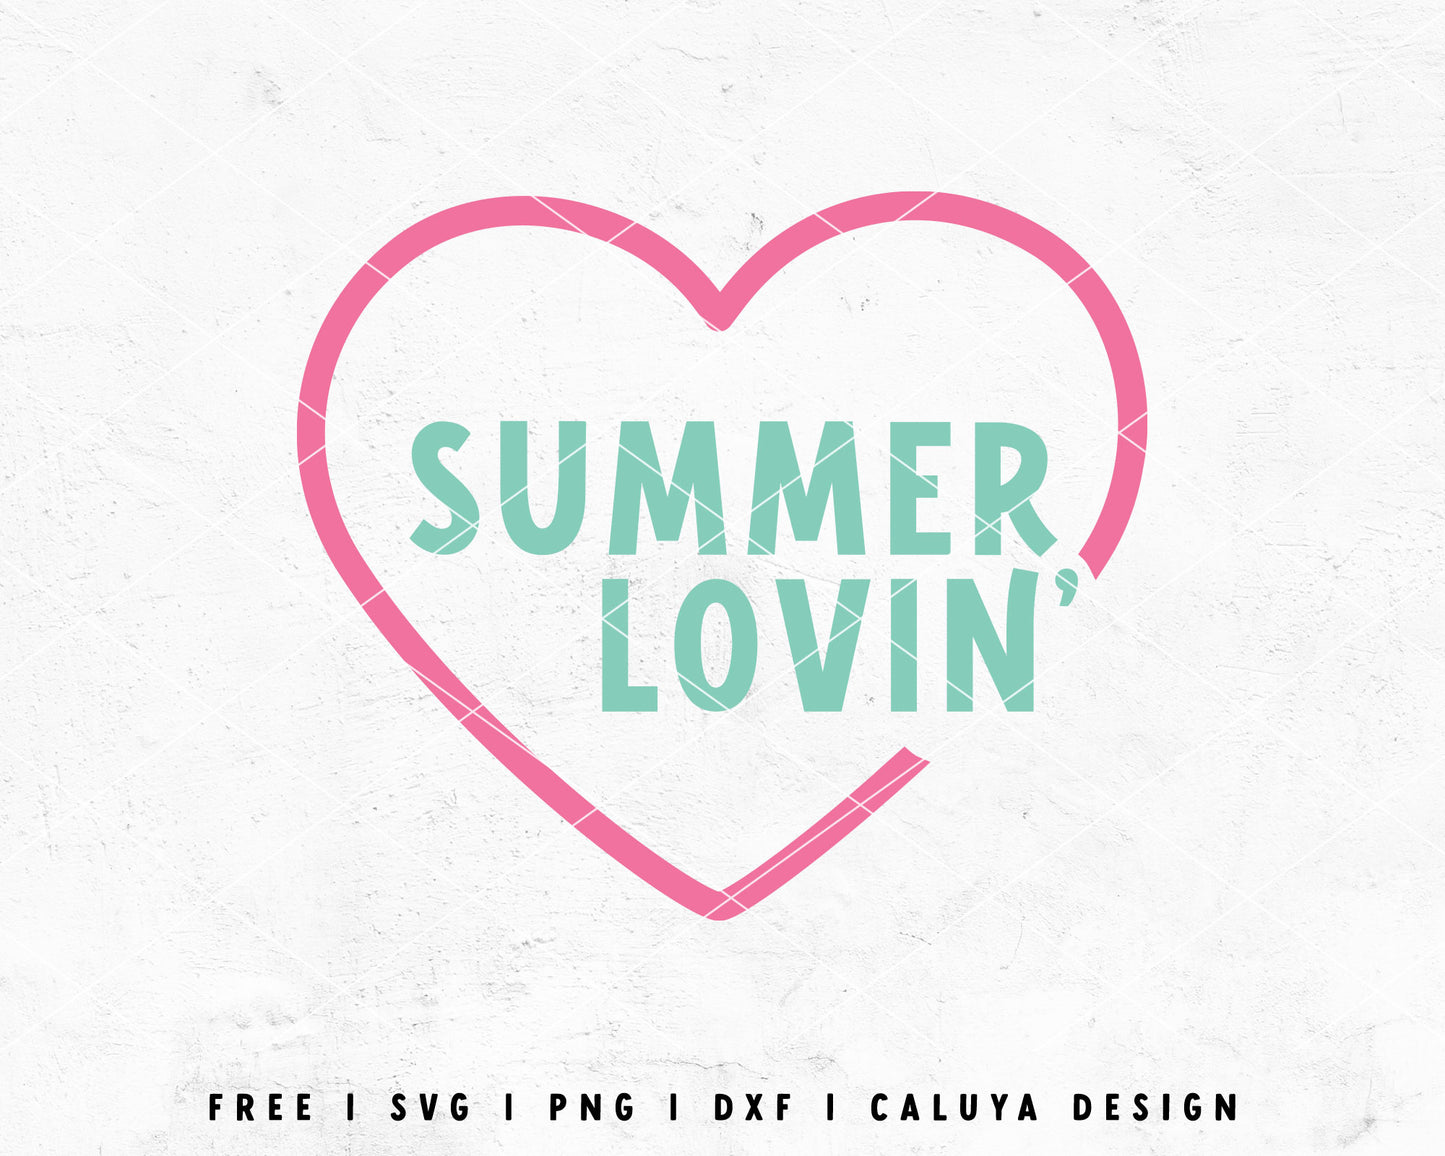 FREE Retro Summer SVG | Summer Lovin' SVG